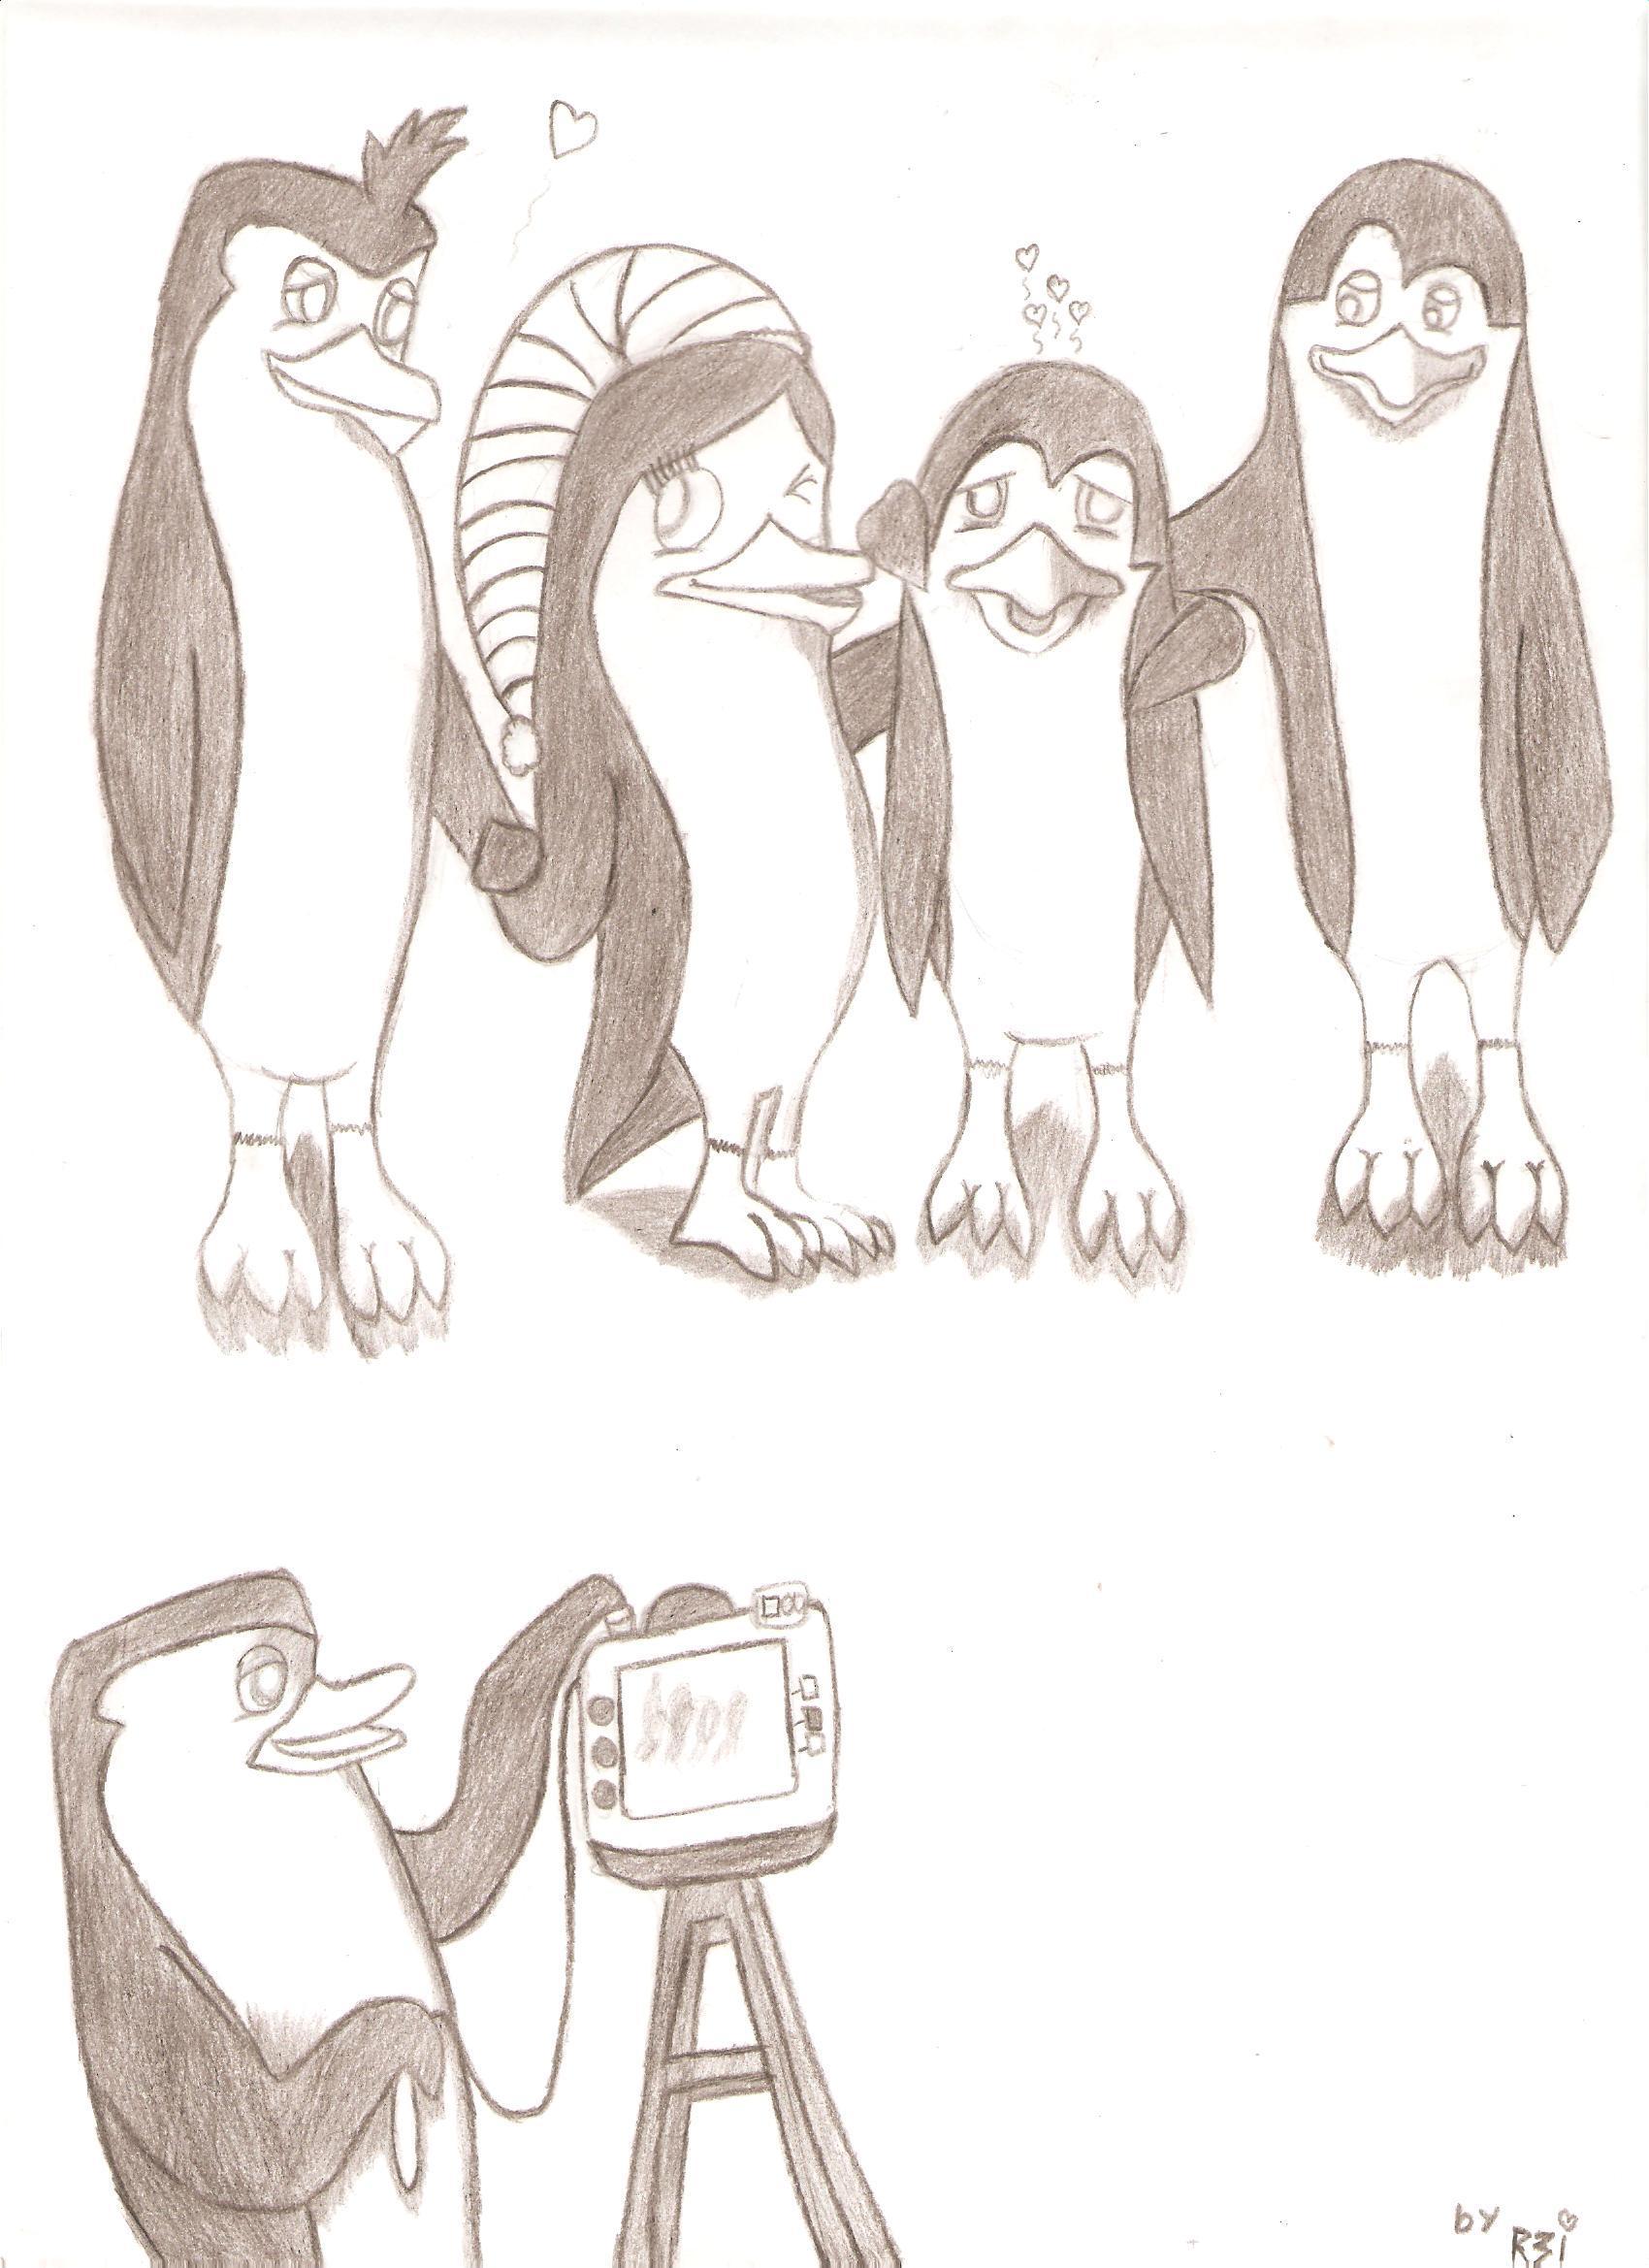 Penguins of Madagascar Fan Art: My penguin family.